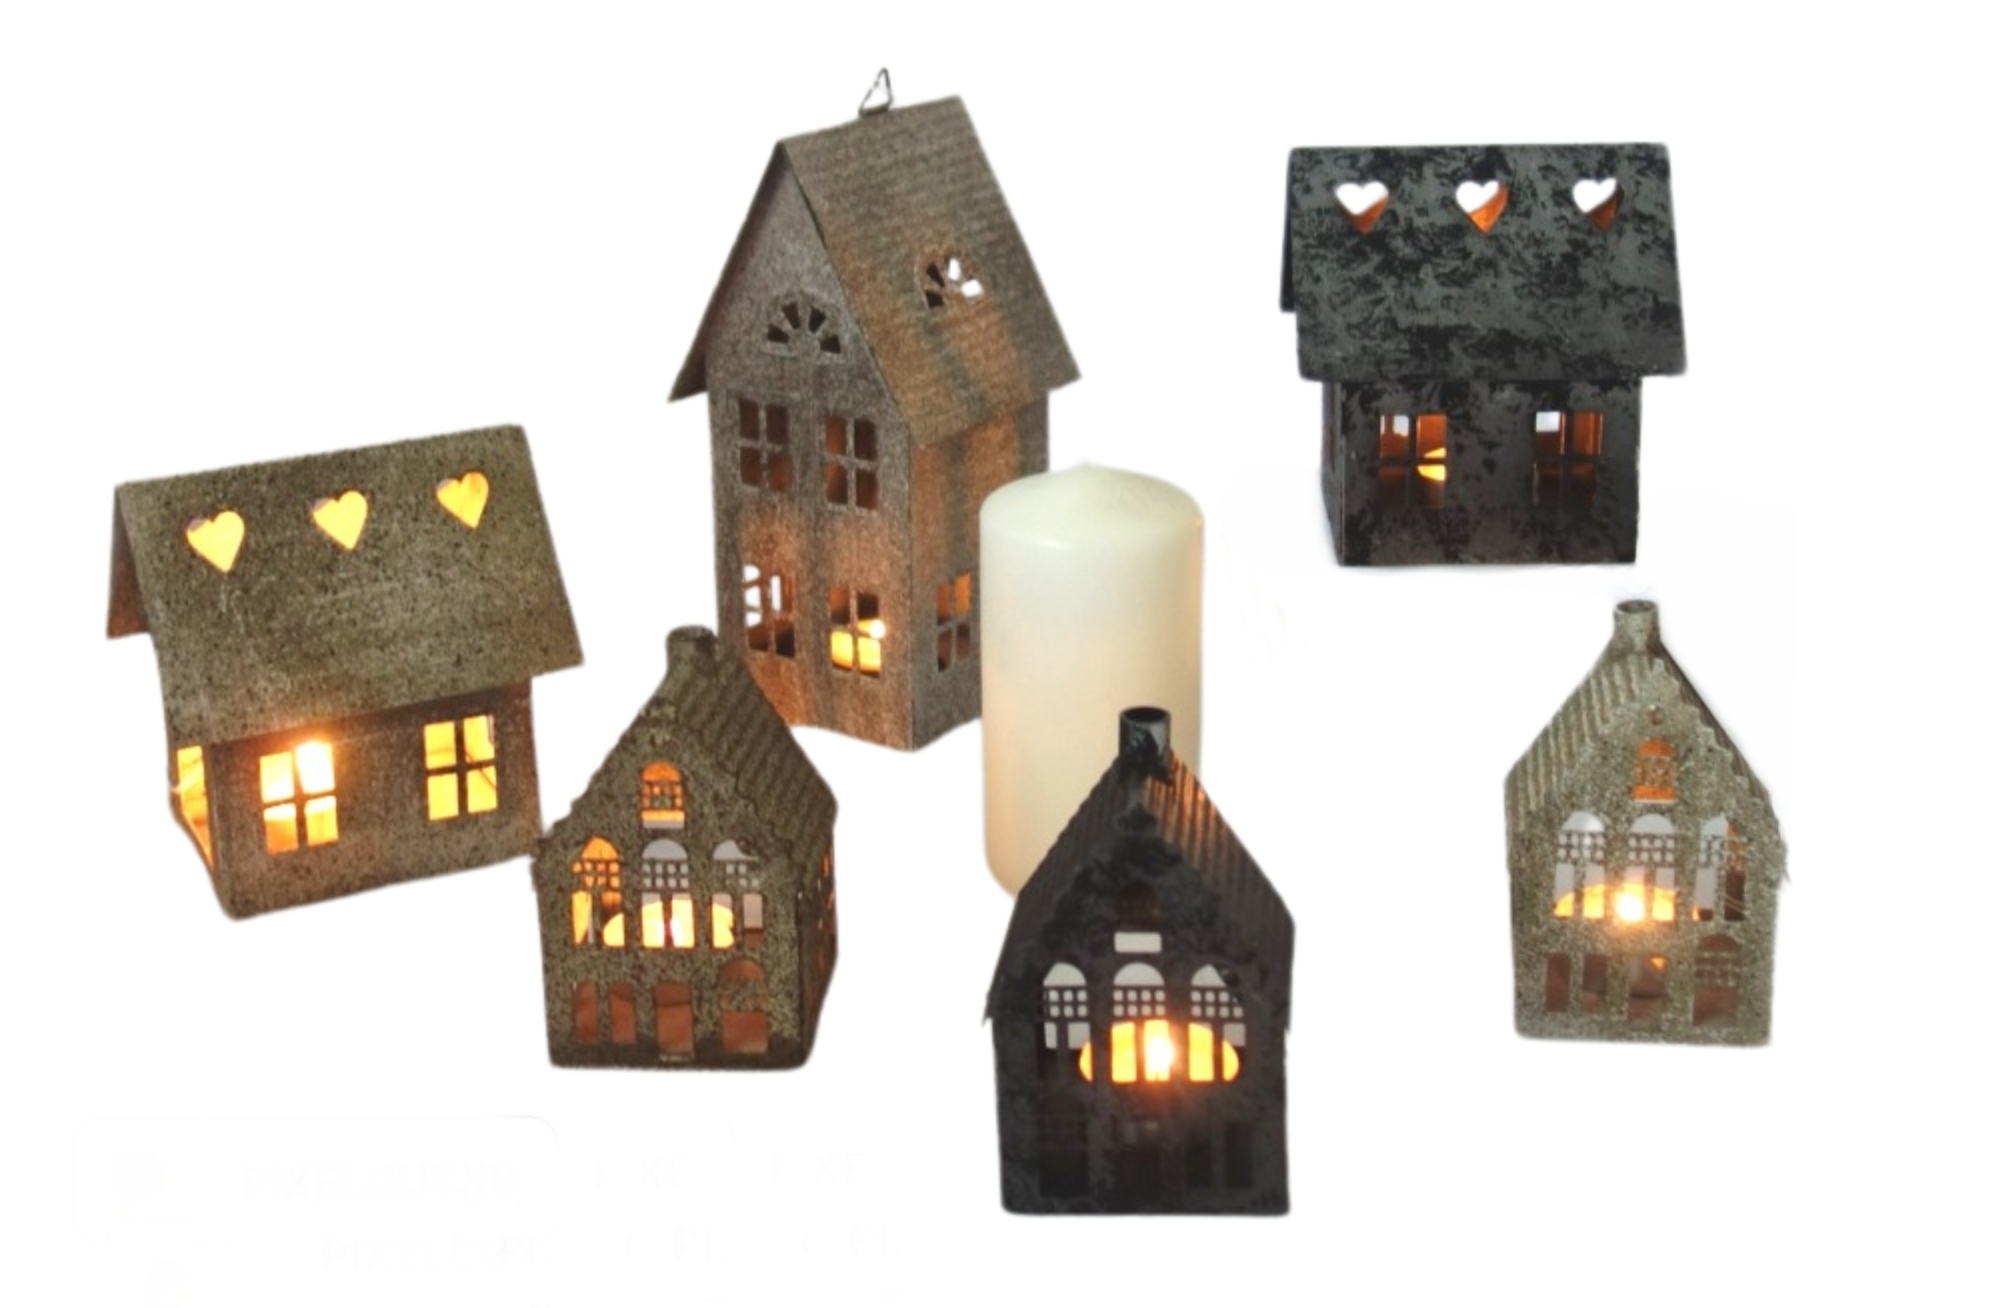 Plechové domečky, svícny a zvonky